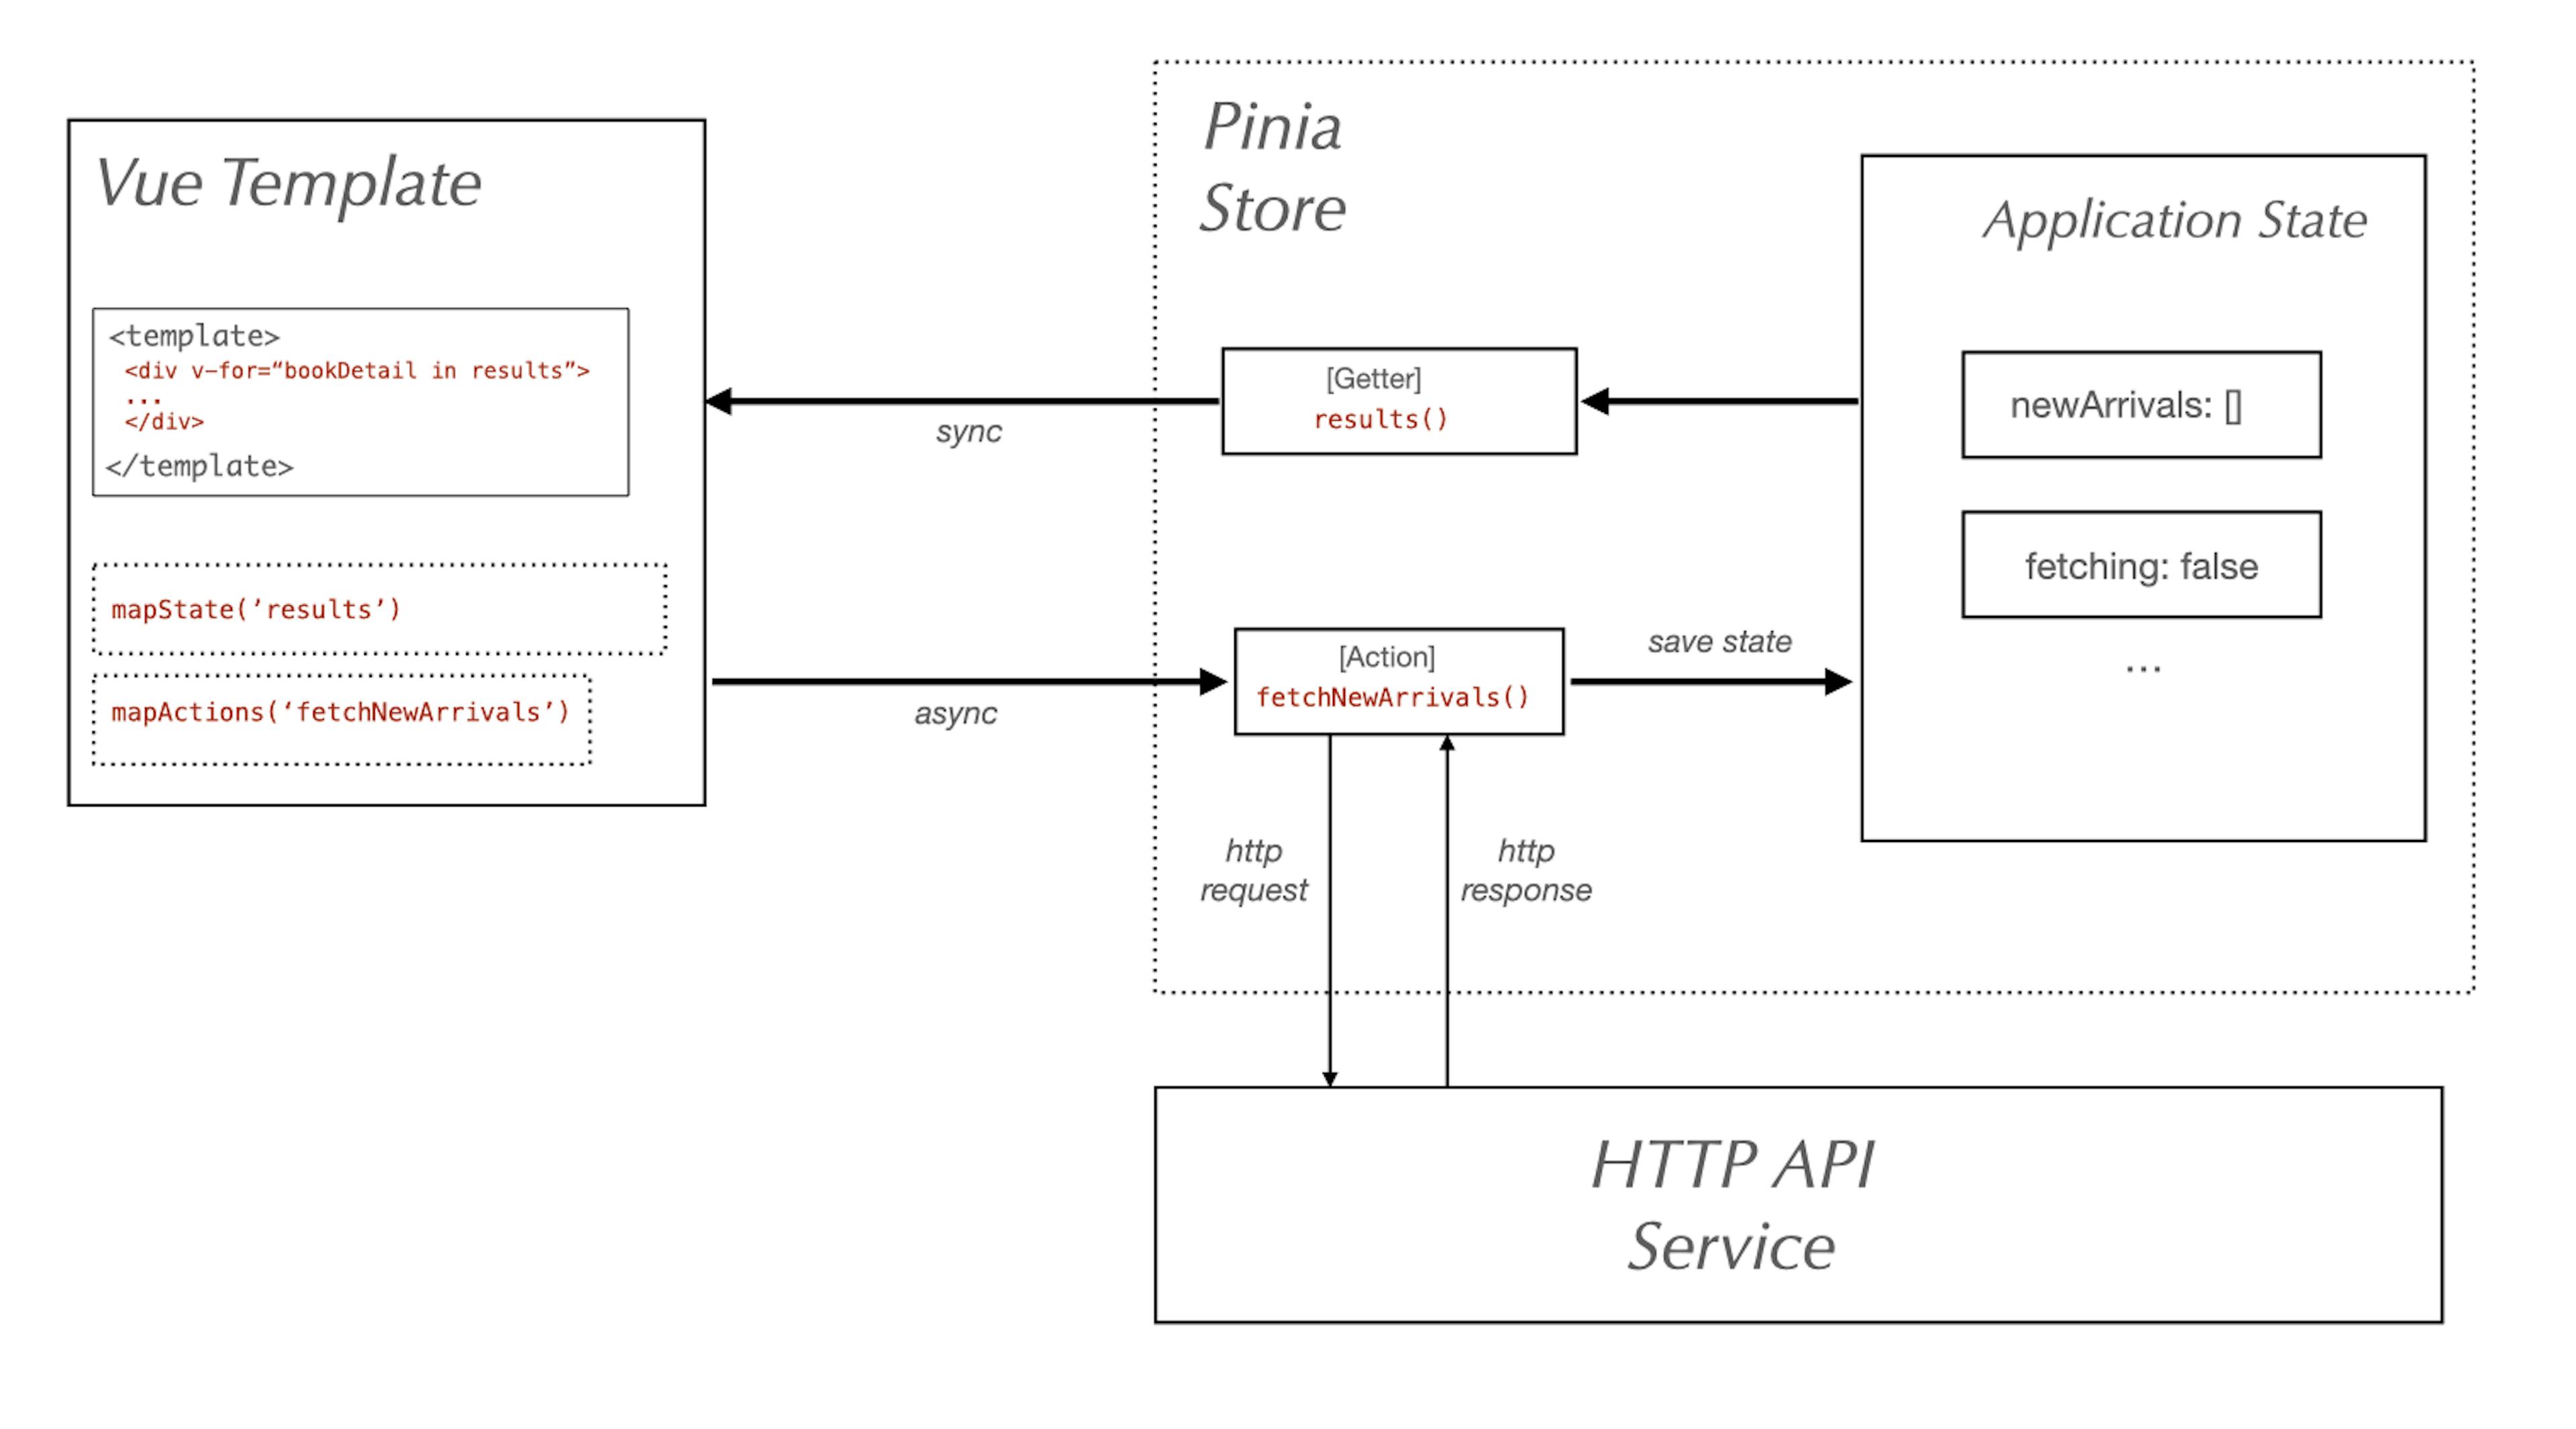 Pinia workflow diagram